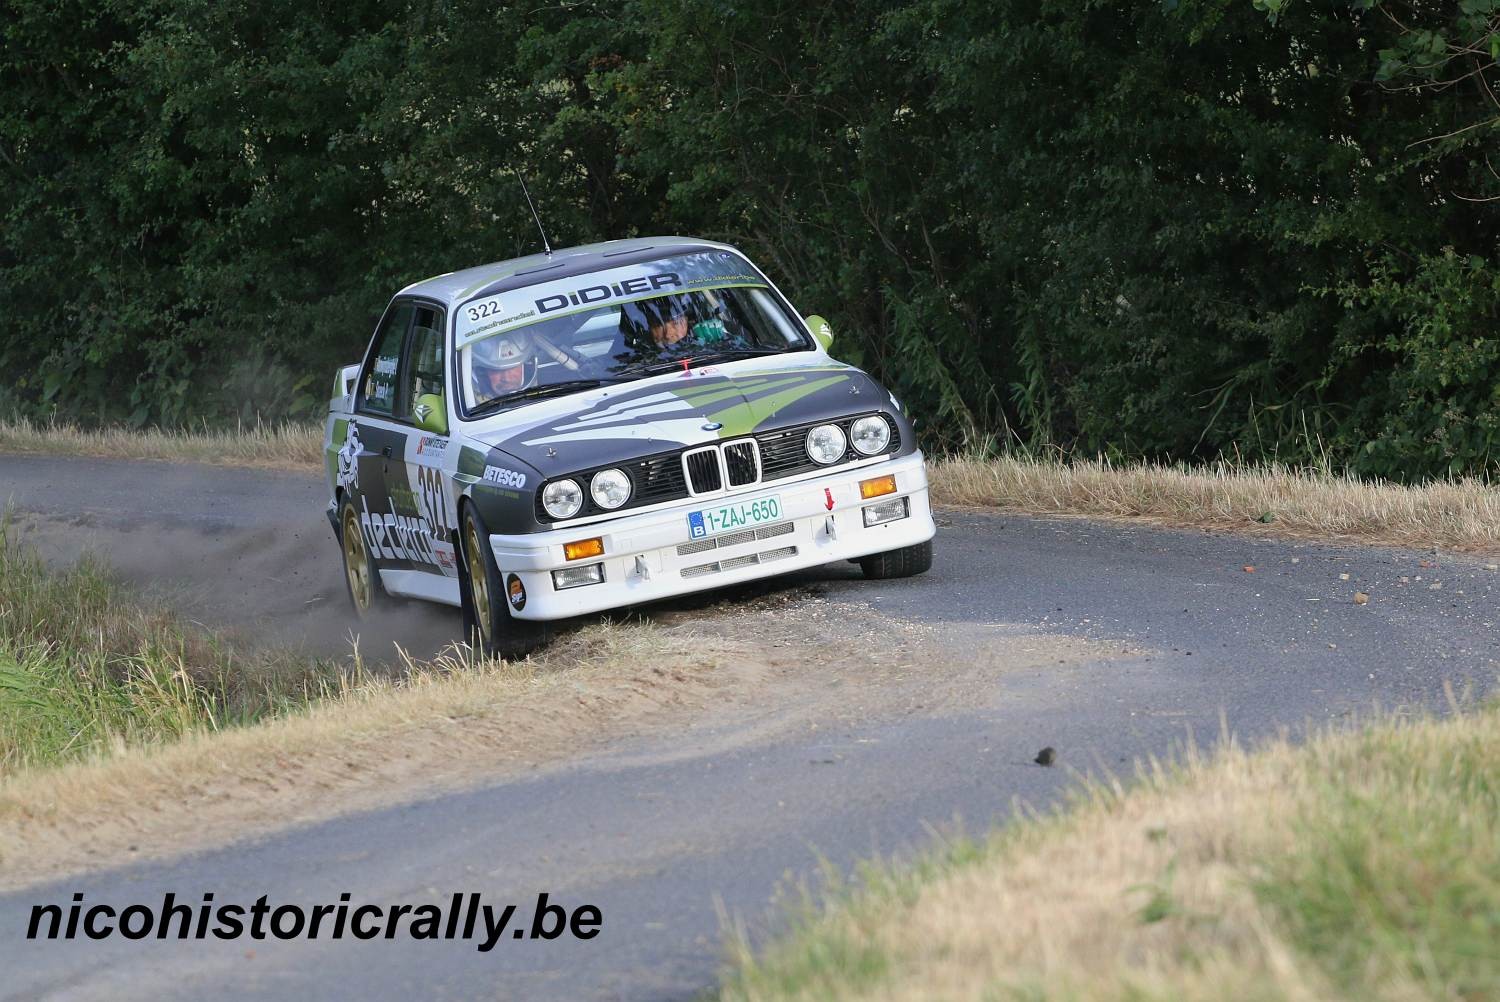 Verslag Classics Ieper:Routinier Didier Vanwijnsberghe de sterkste in de Ypres Classic Rally